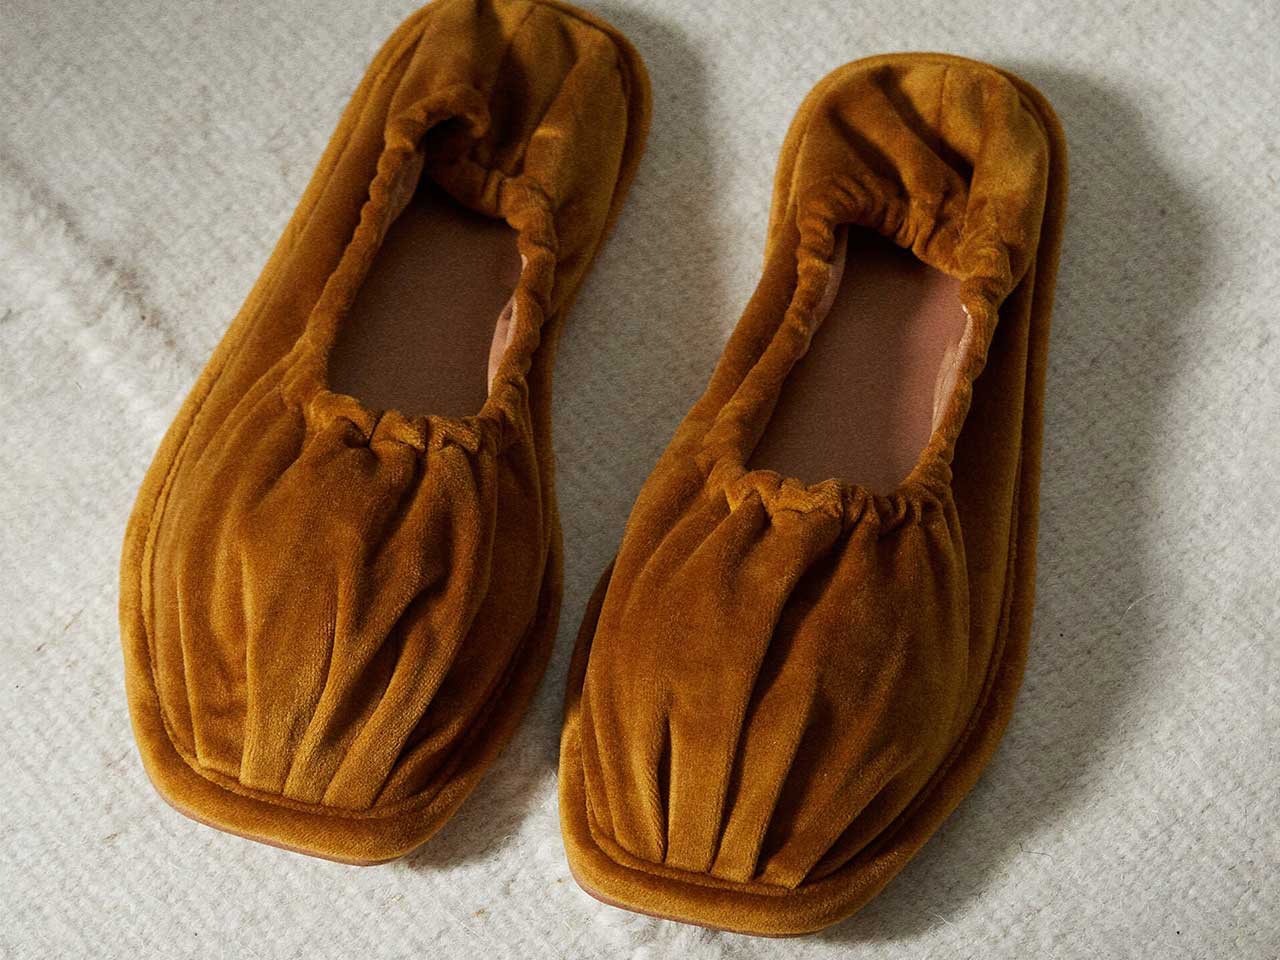 A pair of brown velvet ballerina slippers seen from above.